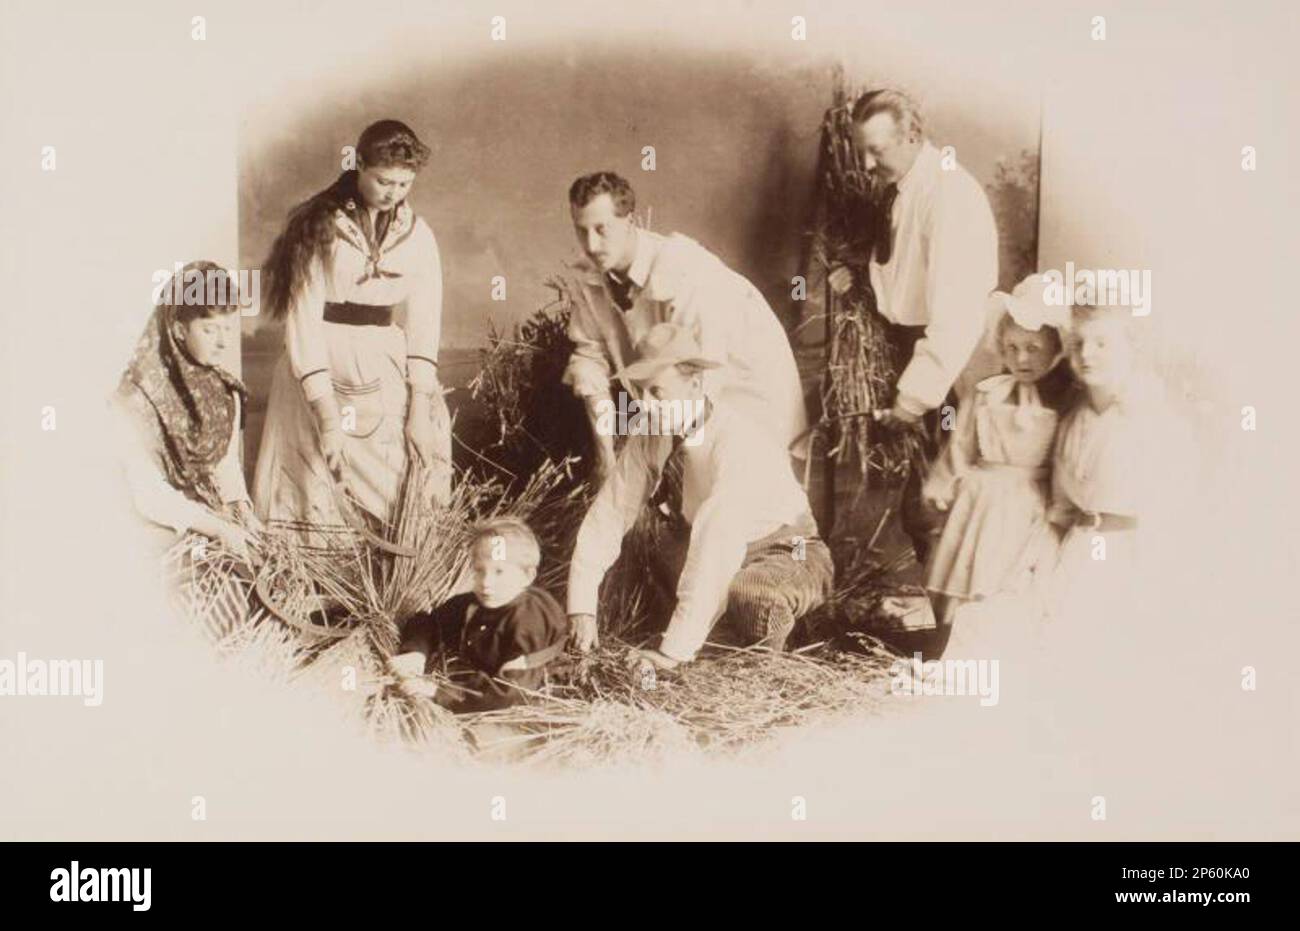 Tableau Vivant 'Harvest', 1888 Stockfoto